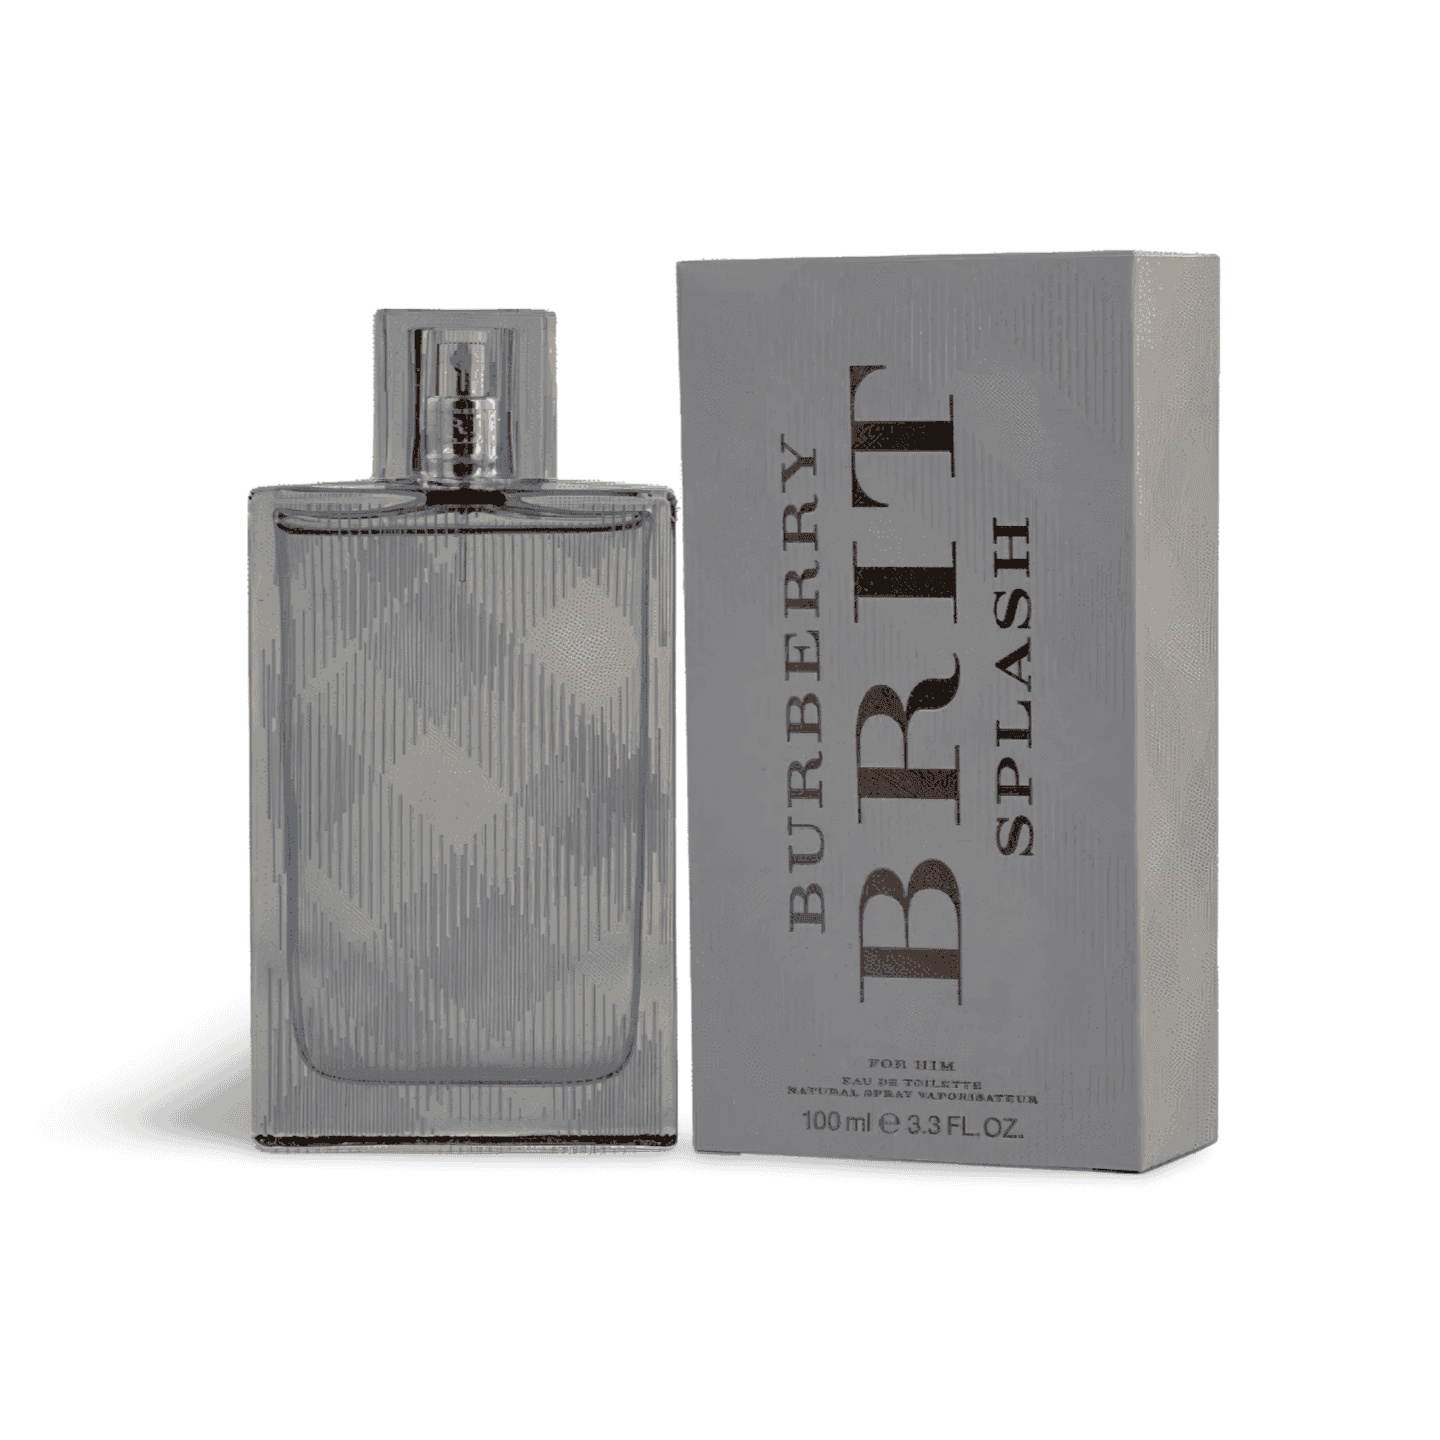 Burberry Brit Splash Eau De Toilette Perfume